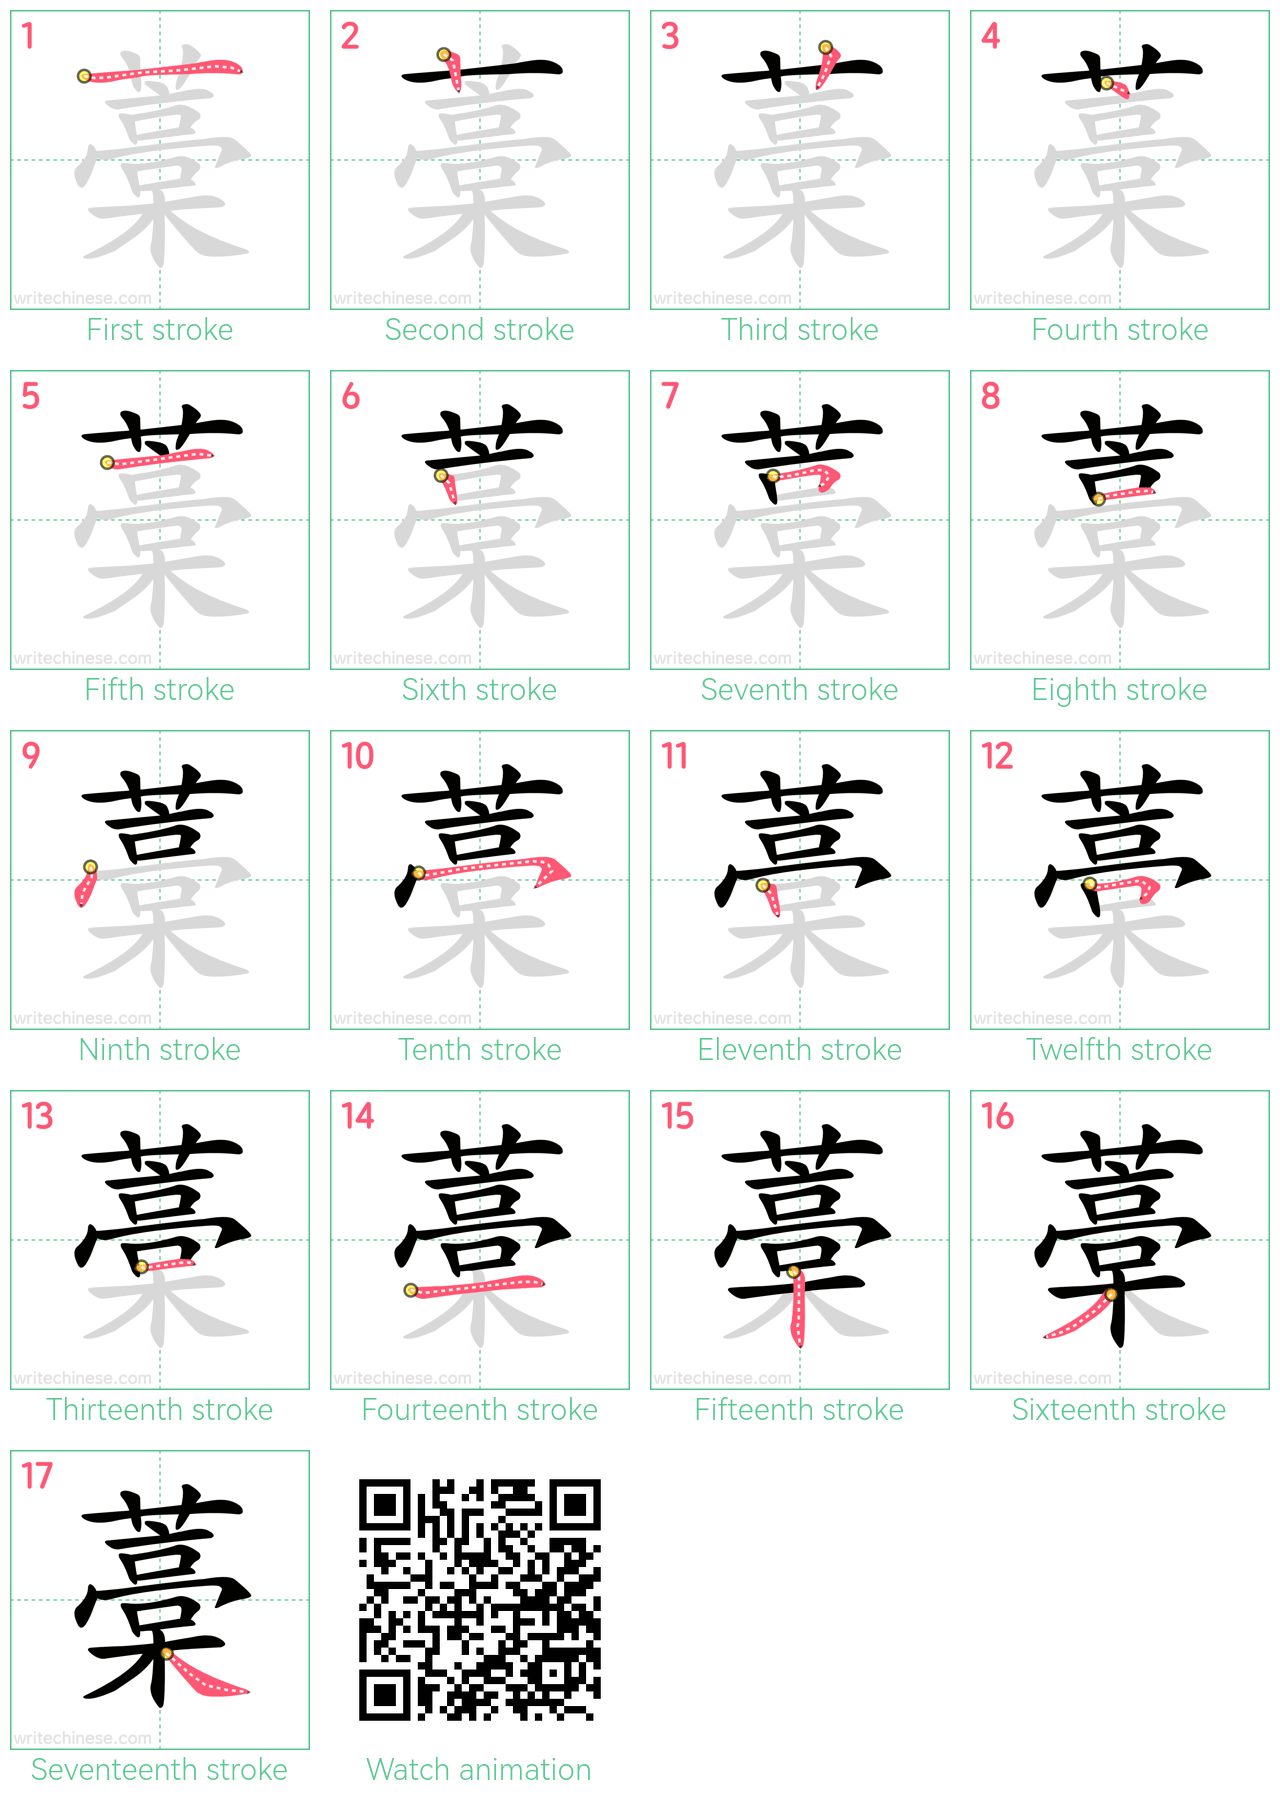 藁 step-by-step stroke order diagrams